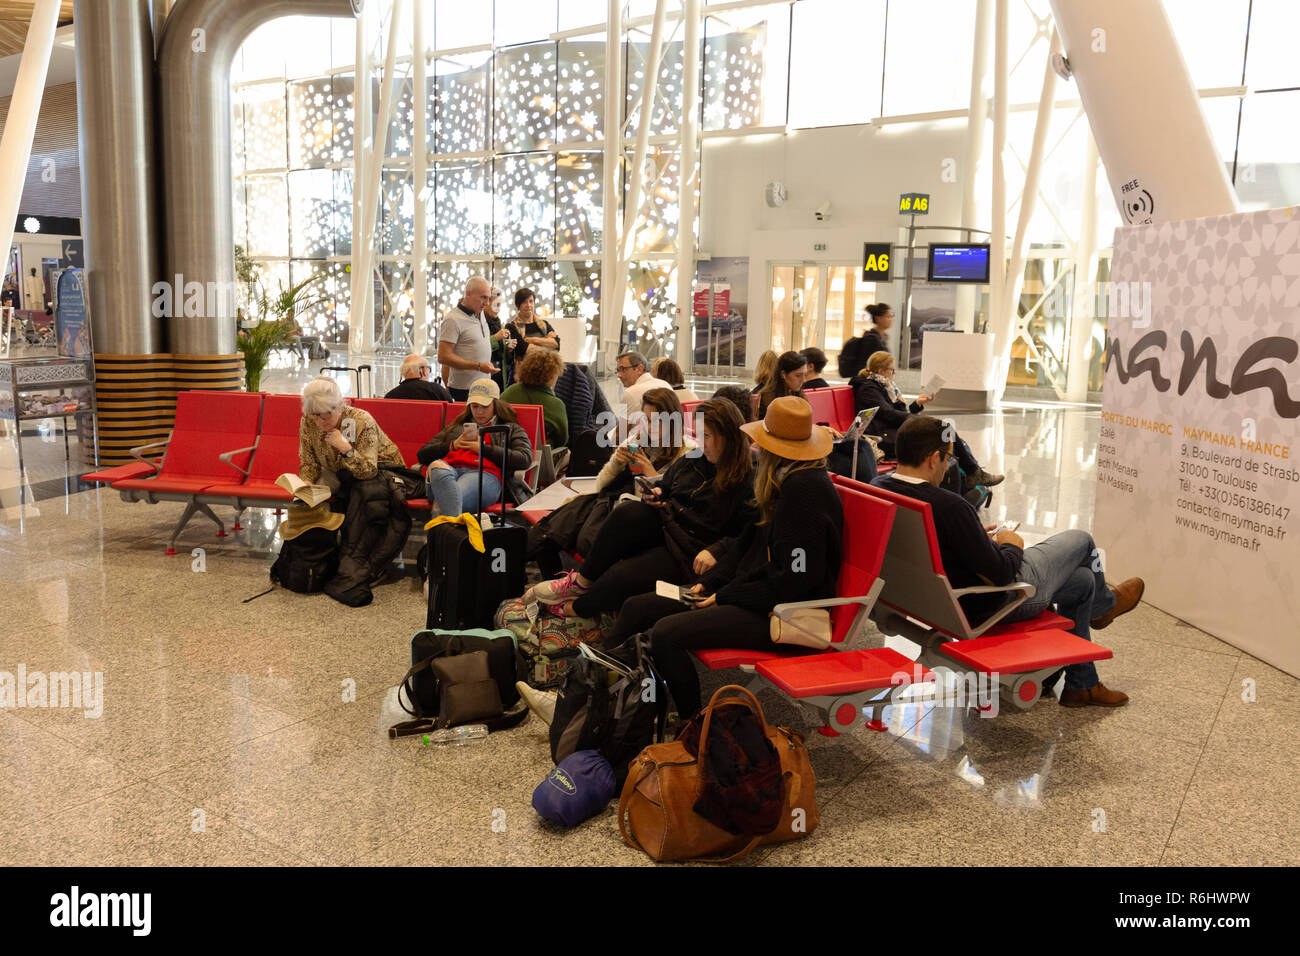 Les départs de l'aéroport de Marrakech, - des gens assis en attente à l'entrée, salle d'embarquement, l'aéroport de Marrakech, Maroc Afrique du Nord Banque D'Images